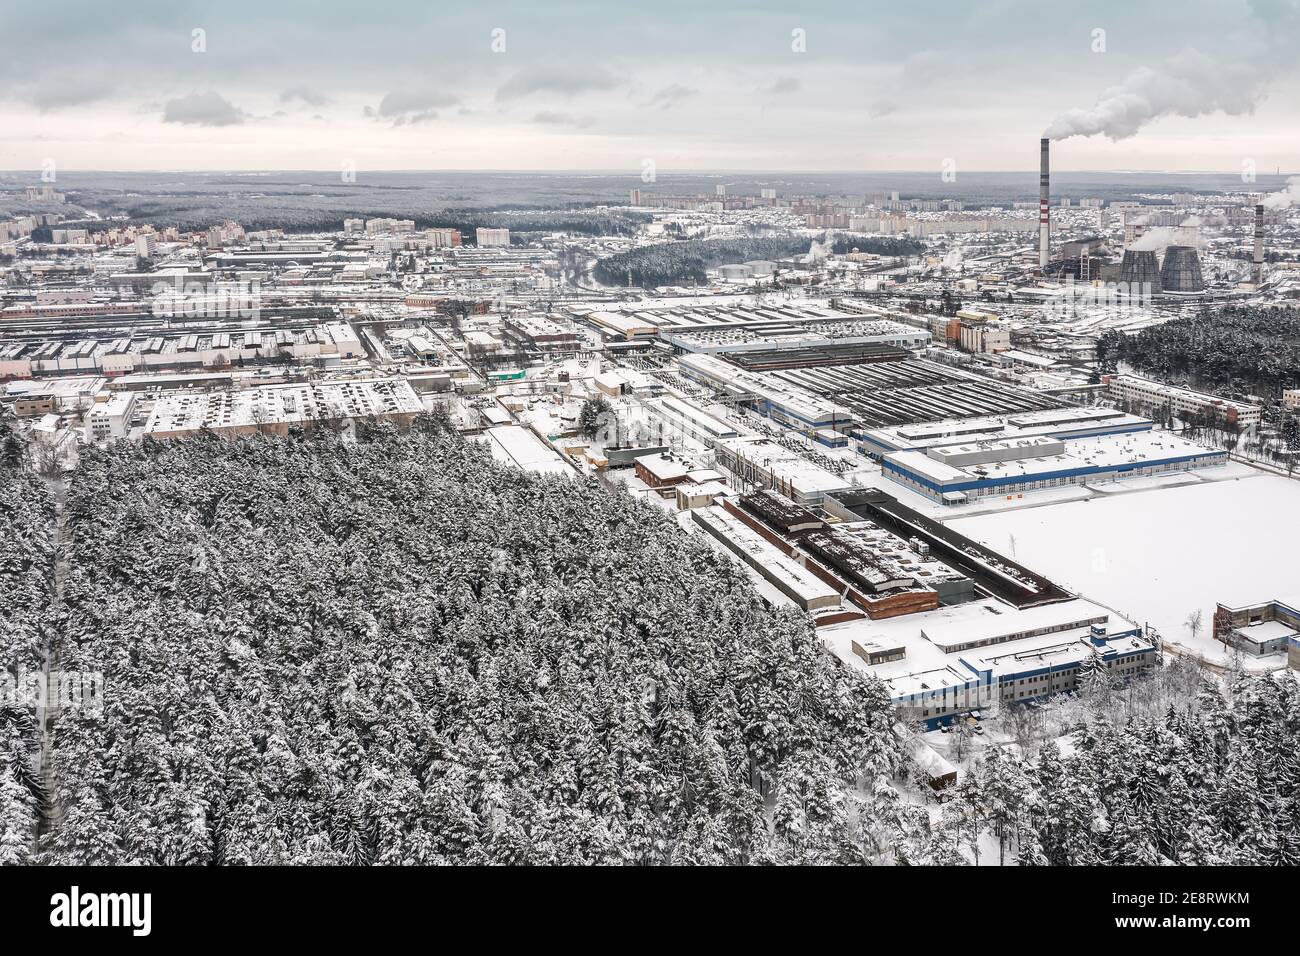 zone industrielle urbaine en hiver. bâtiments d'usine, entrepôts et centrale thermique sur fond ciel couvert. vue aérienne Banque D'Images